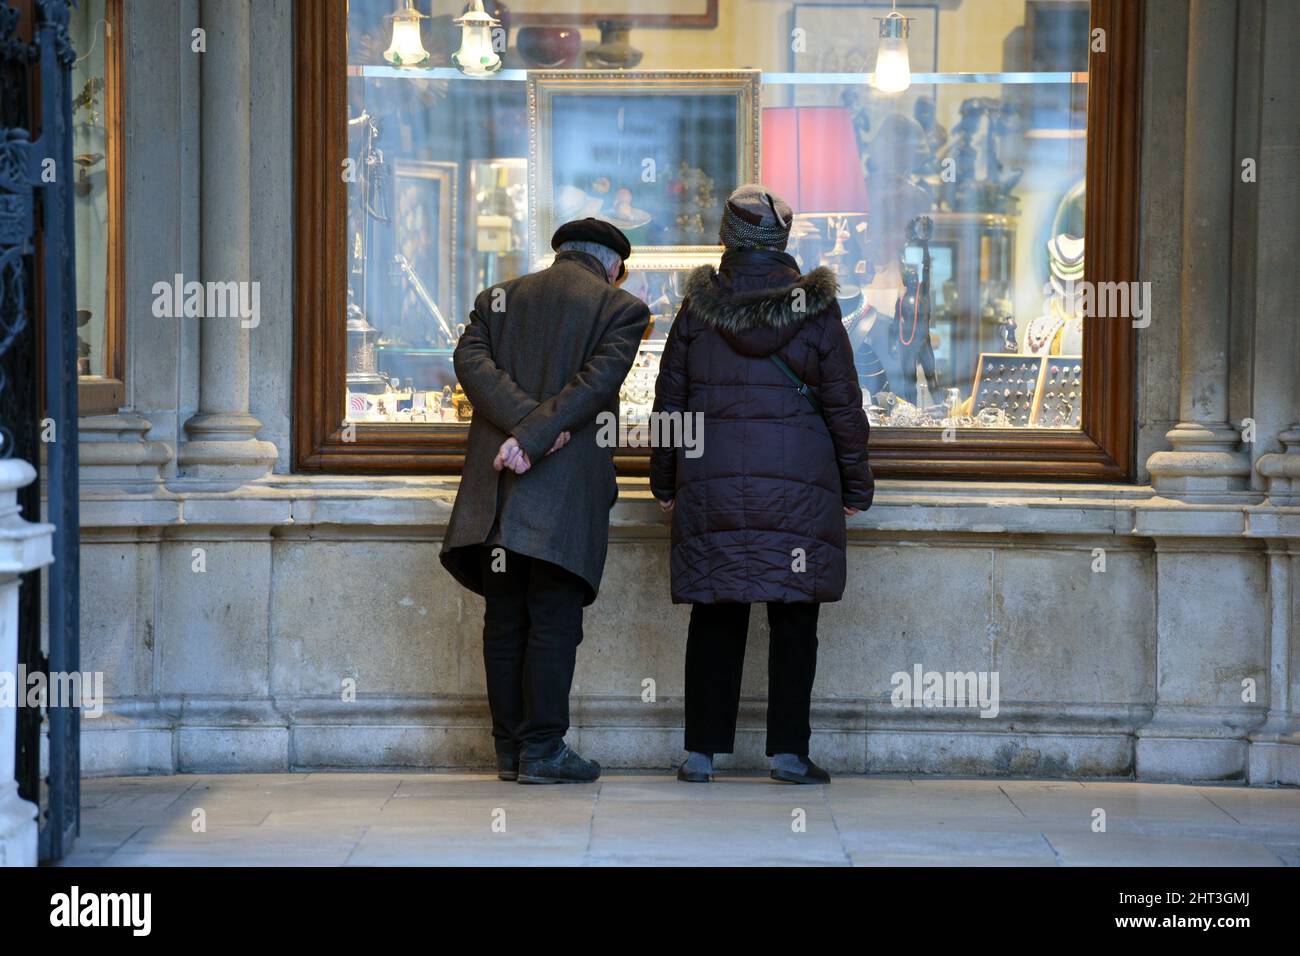 Zwei ältere Personen vor einem Schaufenster in der Wiener Innenstadt, Österreich - Two elderly people in front of a shop window in downtown Vienna, Au Stock Photo